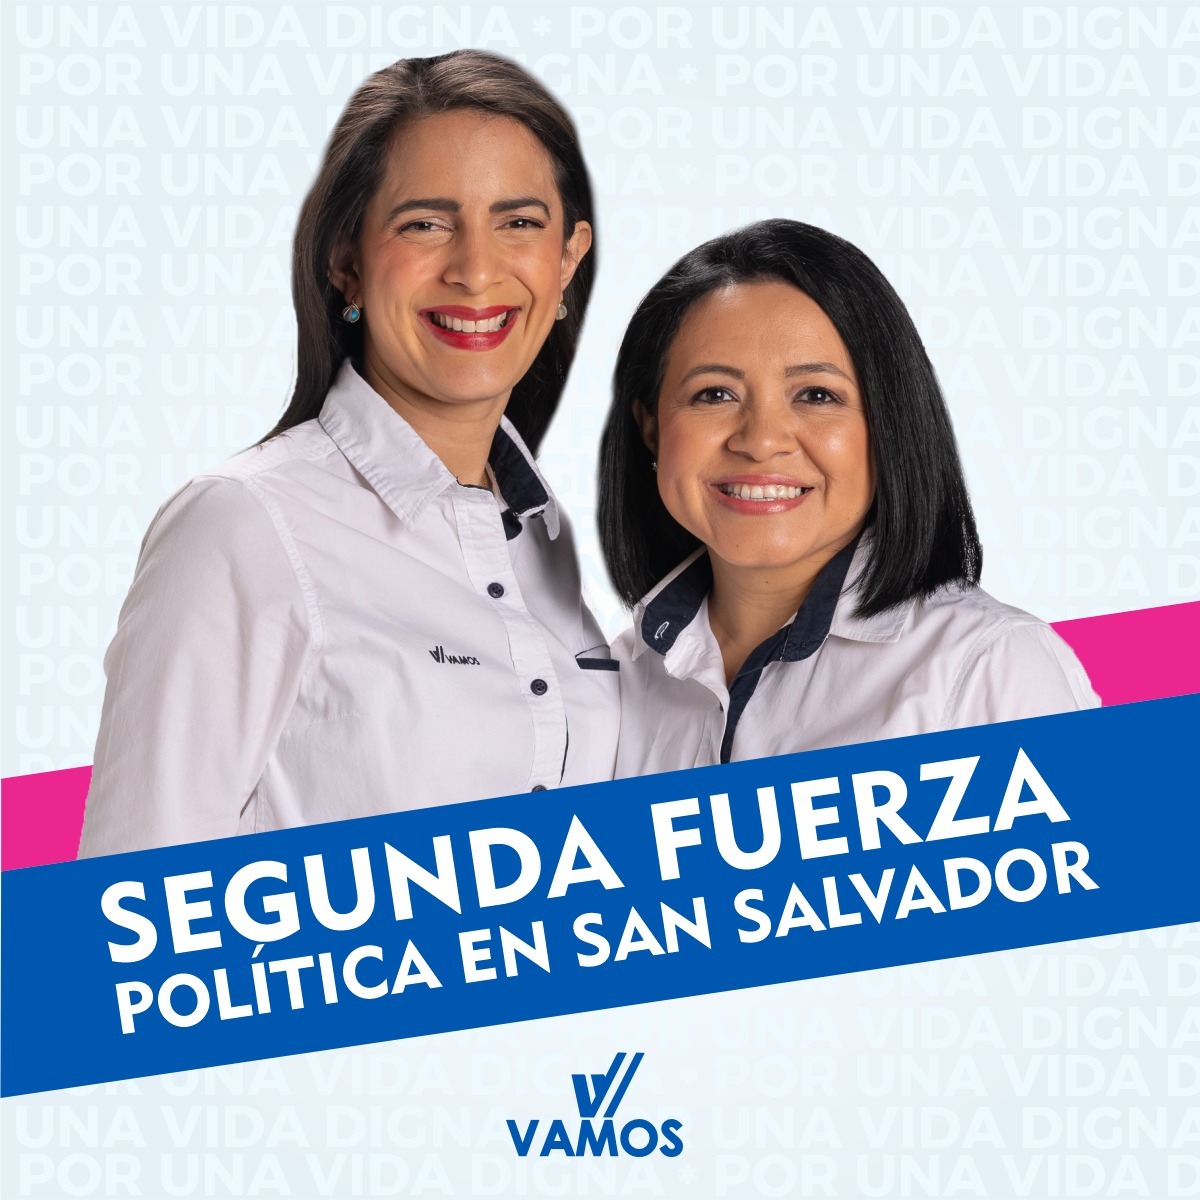 🌞

¡Gracias a su confianza!

Somos la segunda fuerza política en el departamento de #SanSalvador. 

#SomosLaAlternativa

Por una vida digna, #VamosALuchar.✅💪🏼